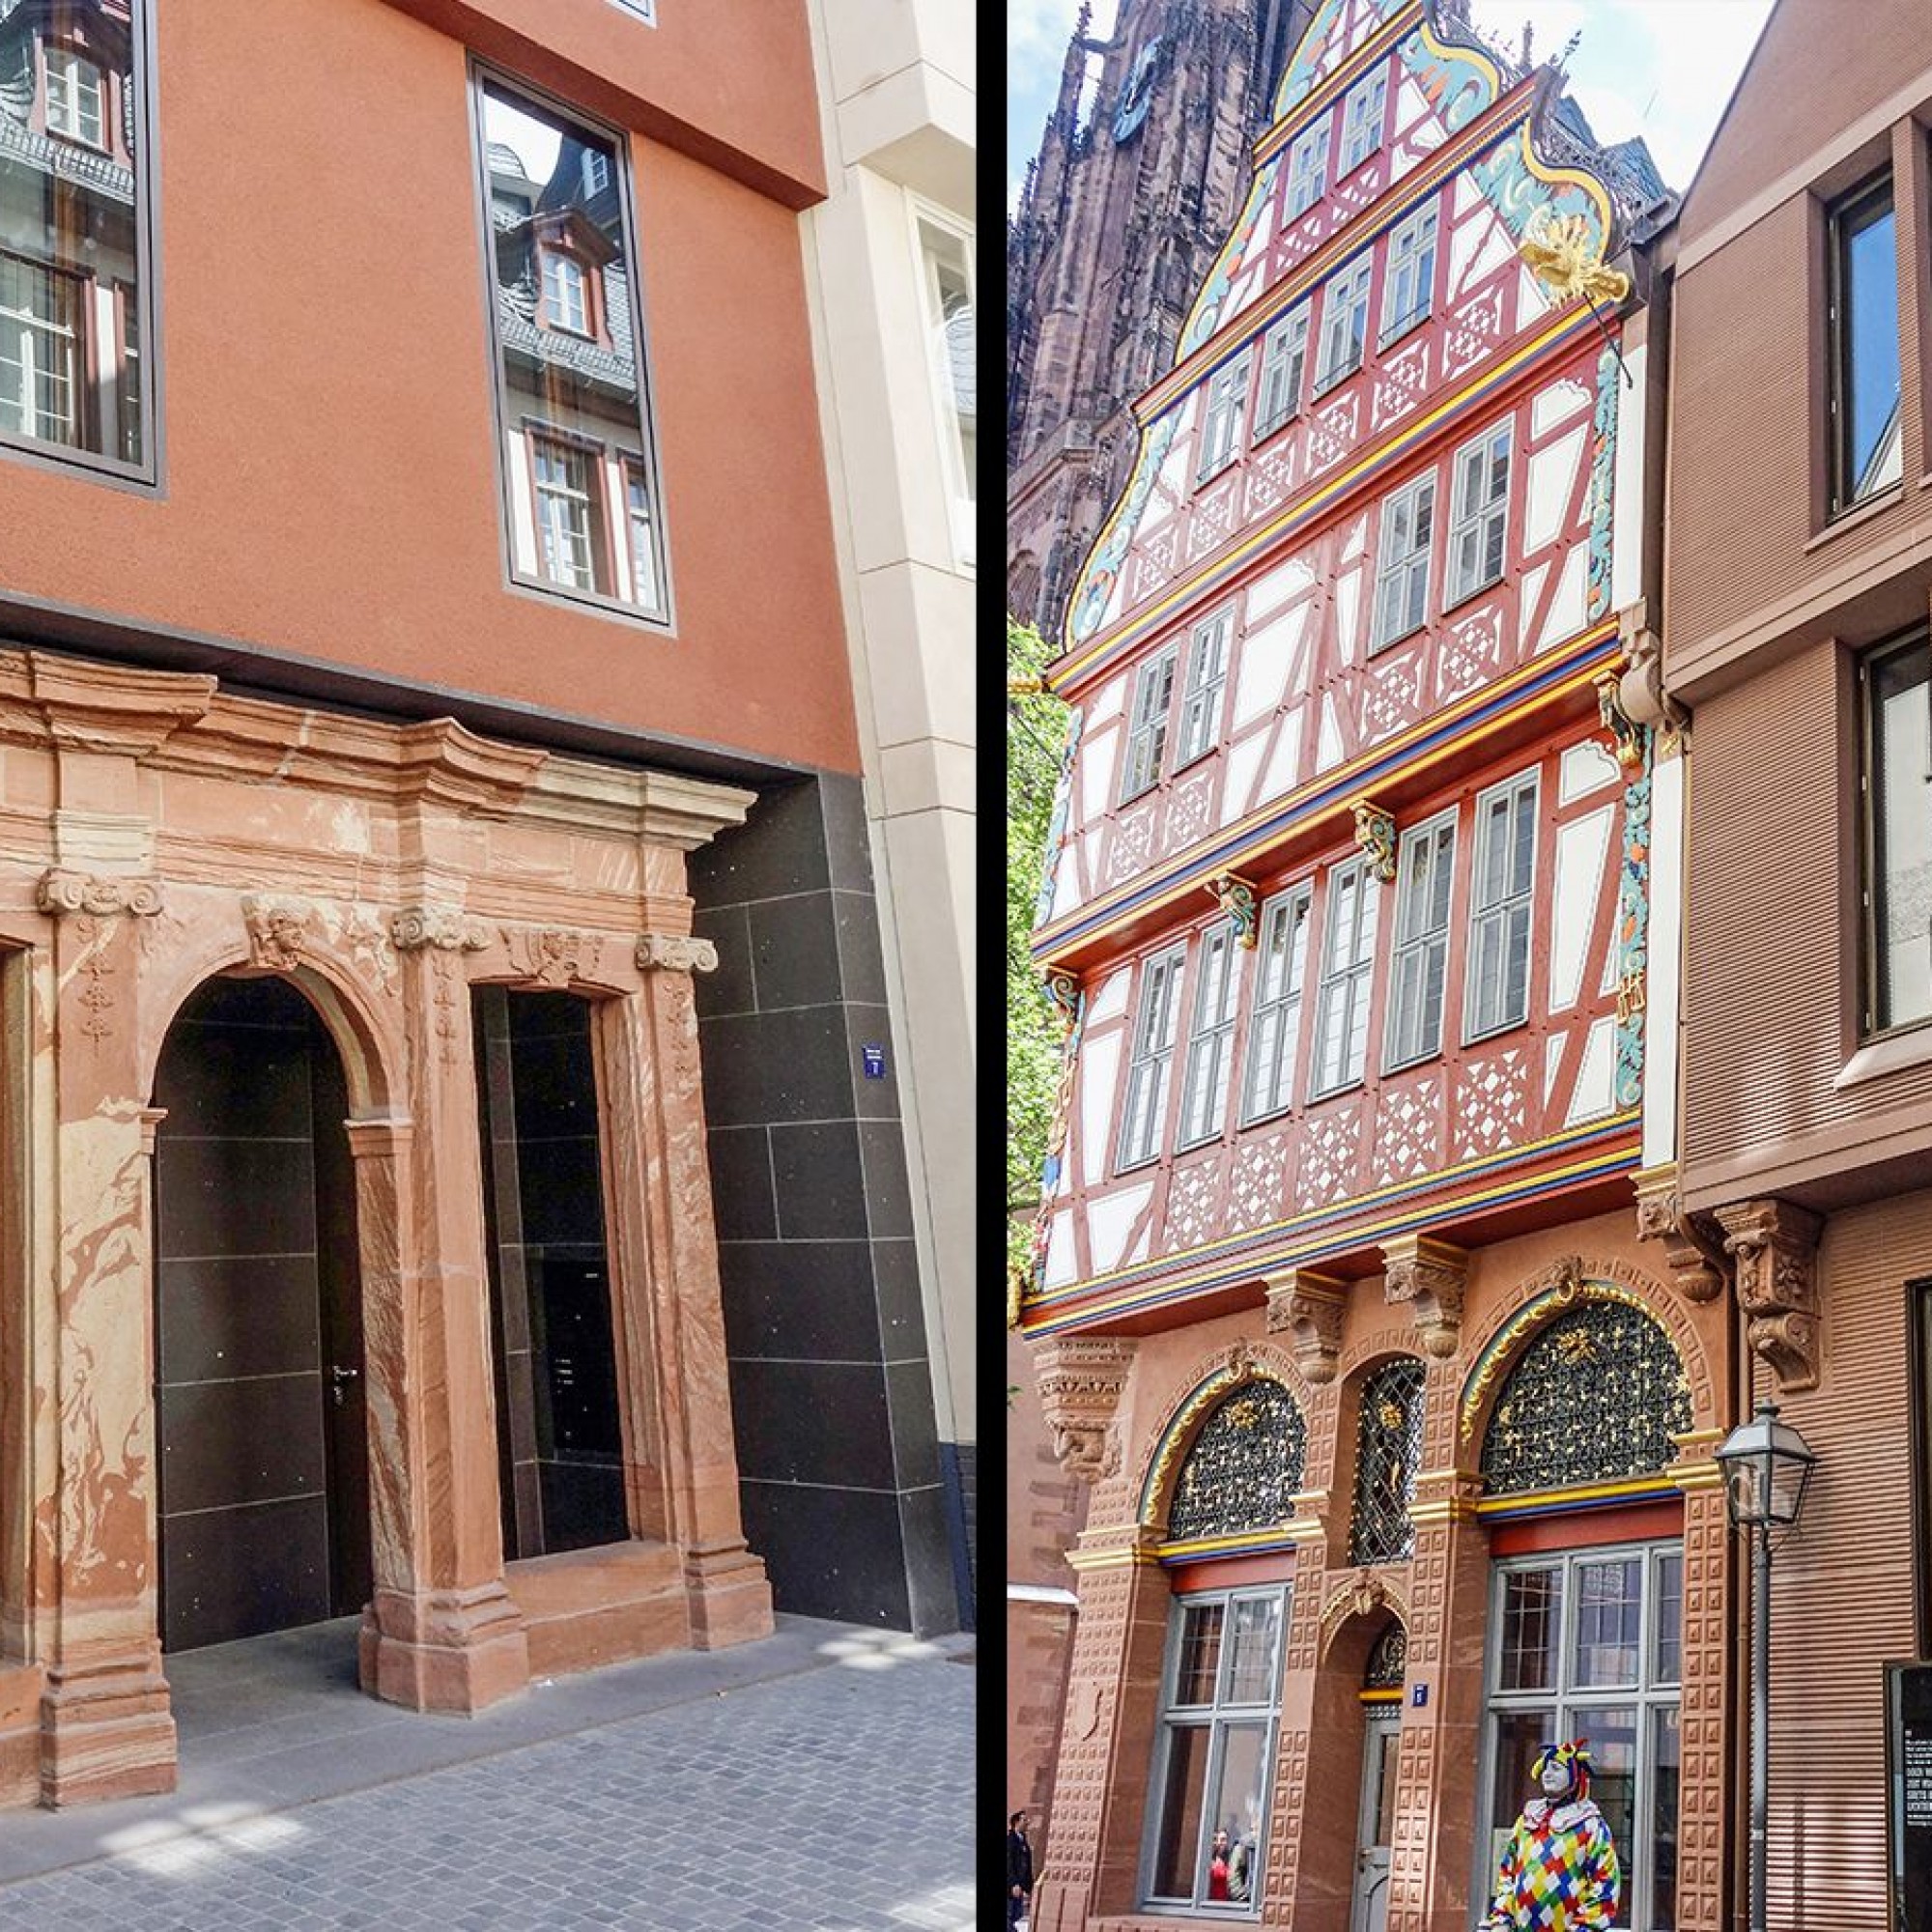 Links: Insgesamt wurden 60 Spolien verbaut. Befremdlich wirken sie trotzdem. Rechts: Das Haus «Goldene Waage» (links) ist so etwas wie das Herzstück der «Neuen Altstadt». 